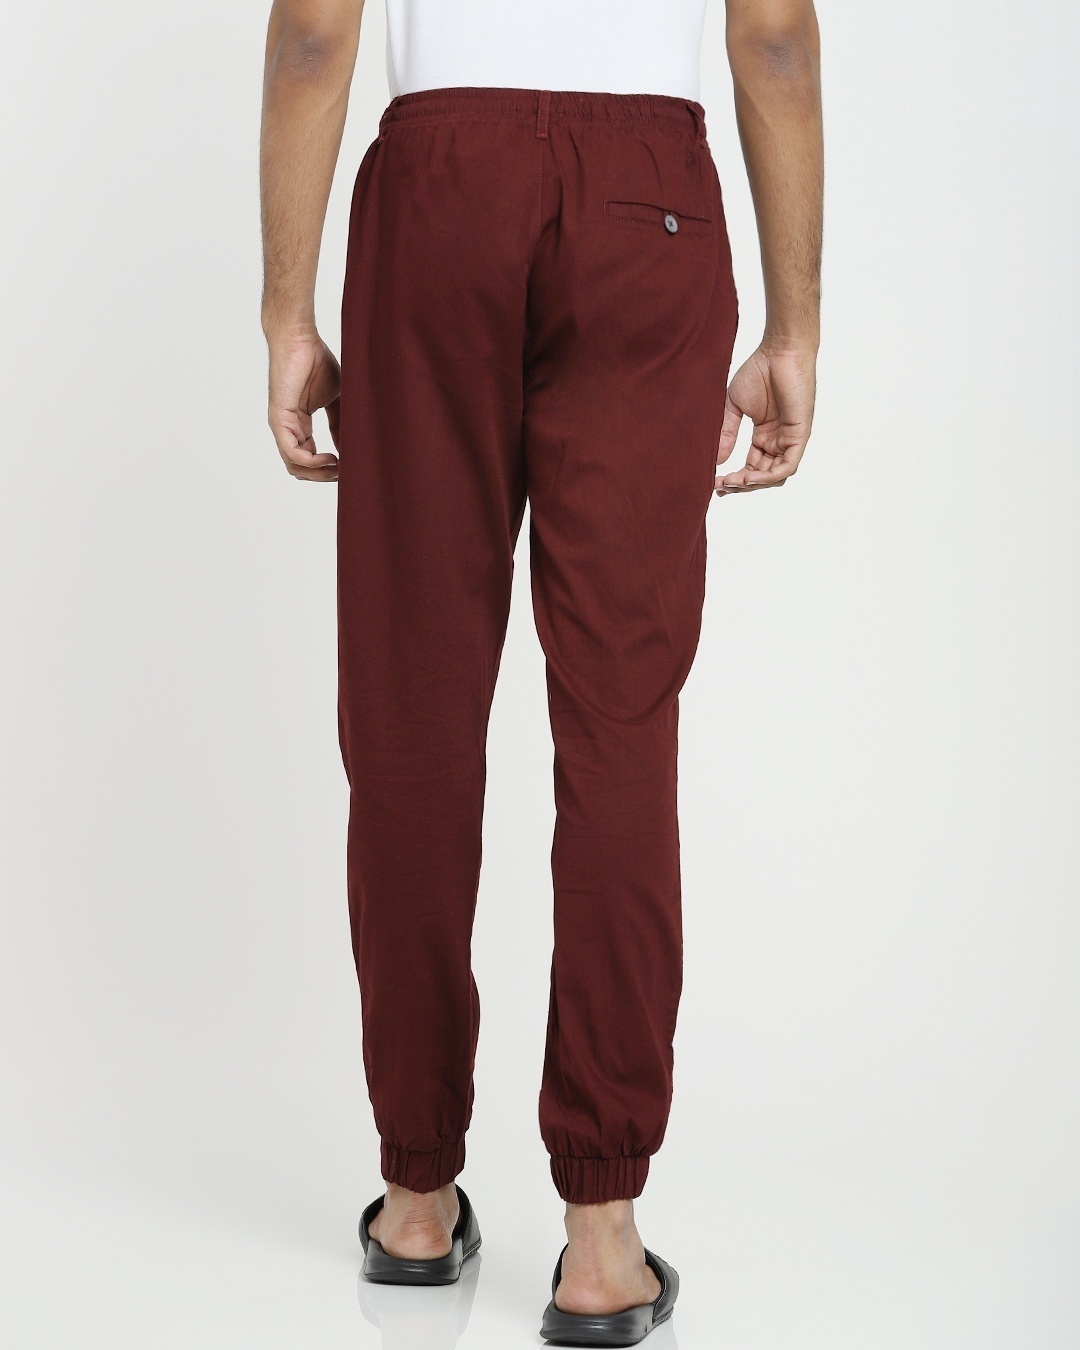 Shop Wine Red Cotton Jogger Pants-Design